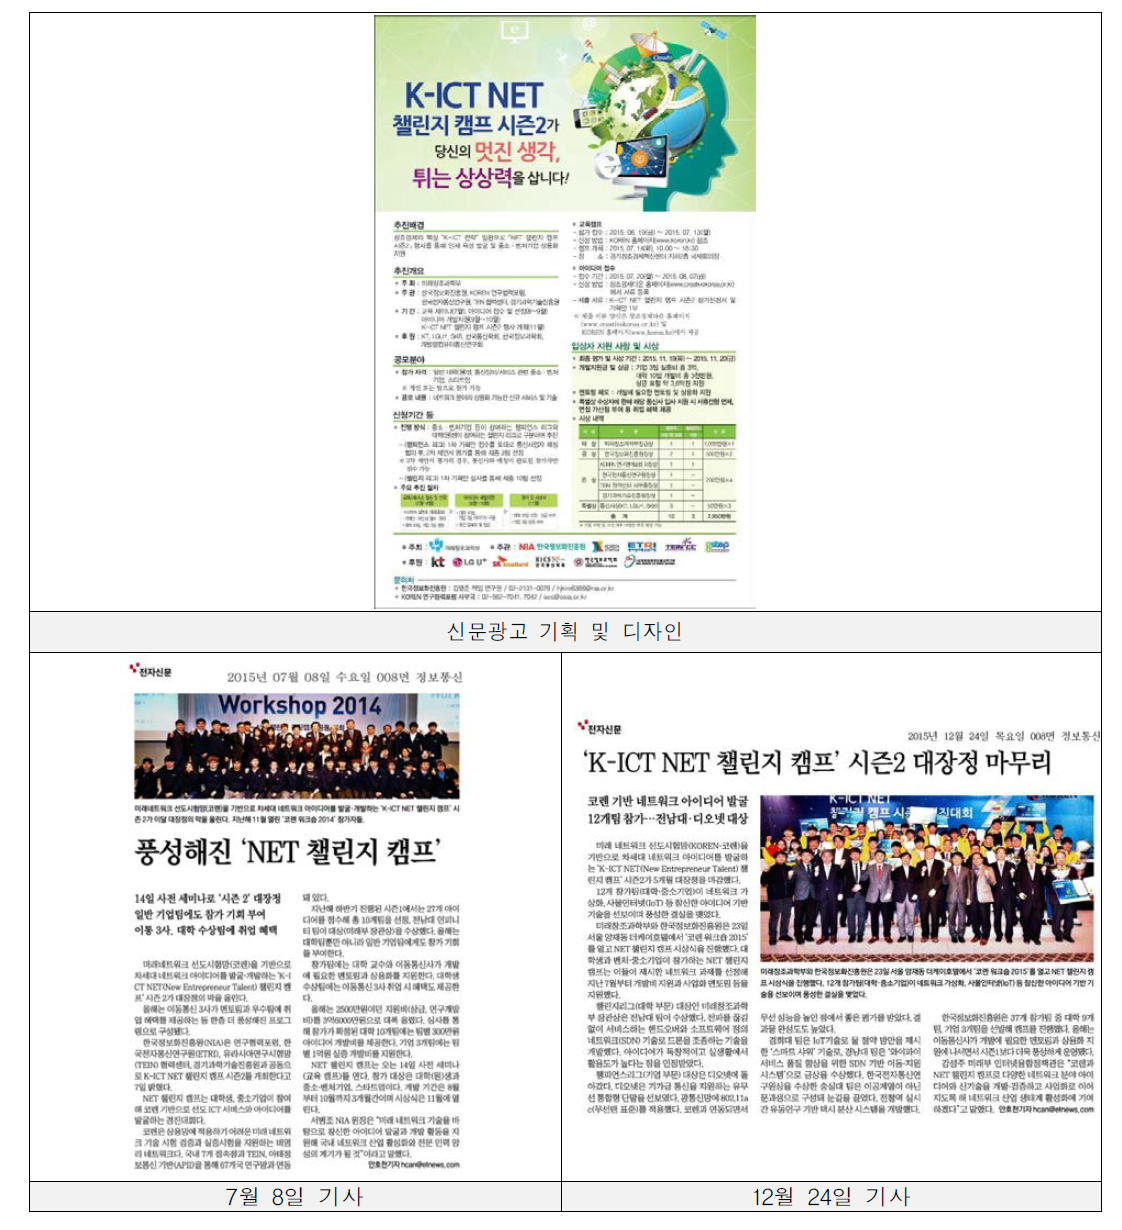 ‘K-ICT NET 챌린지캠프 시즌2’ 신문광고 내용과 지면에 게재된 모습